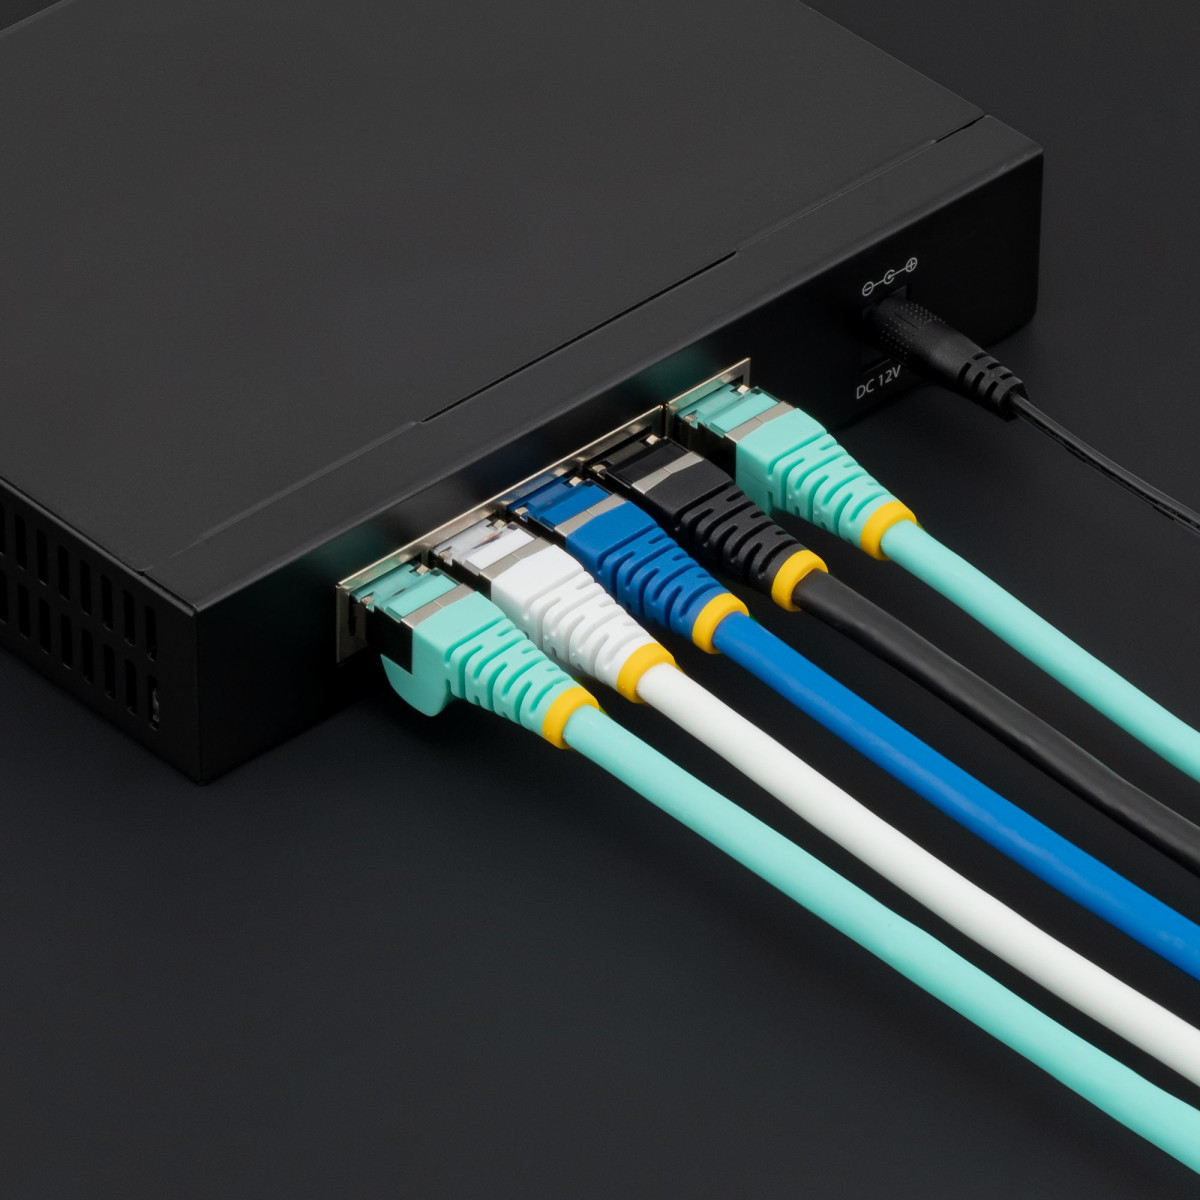 10m LSZH CAT6a Ethernet Cable - Black